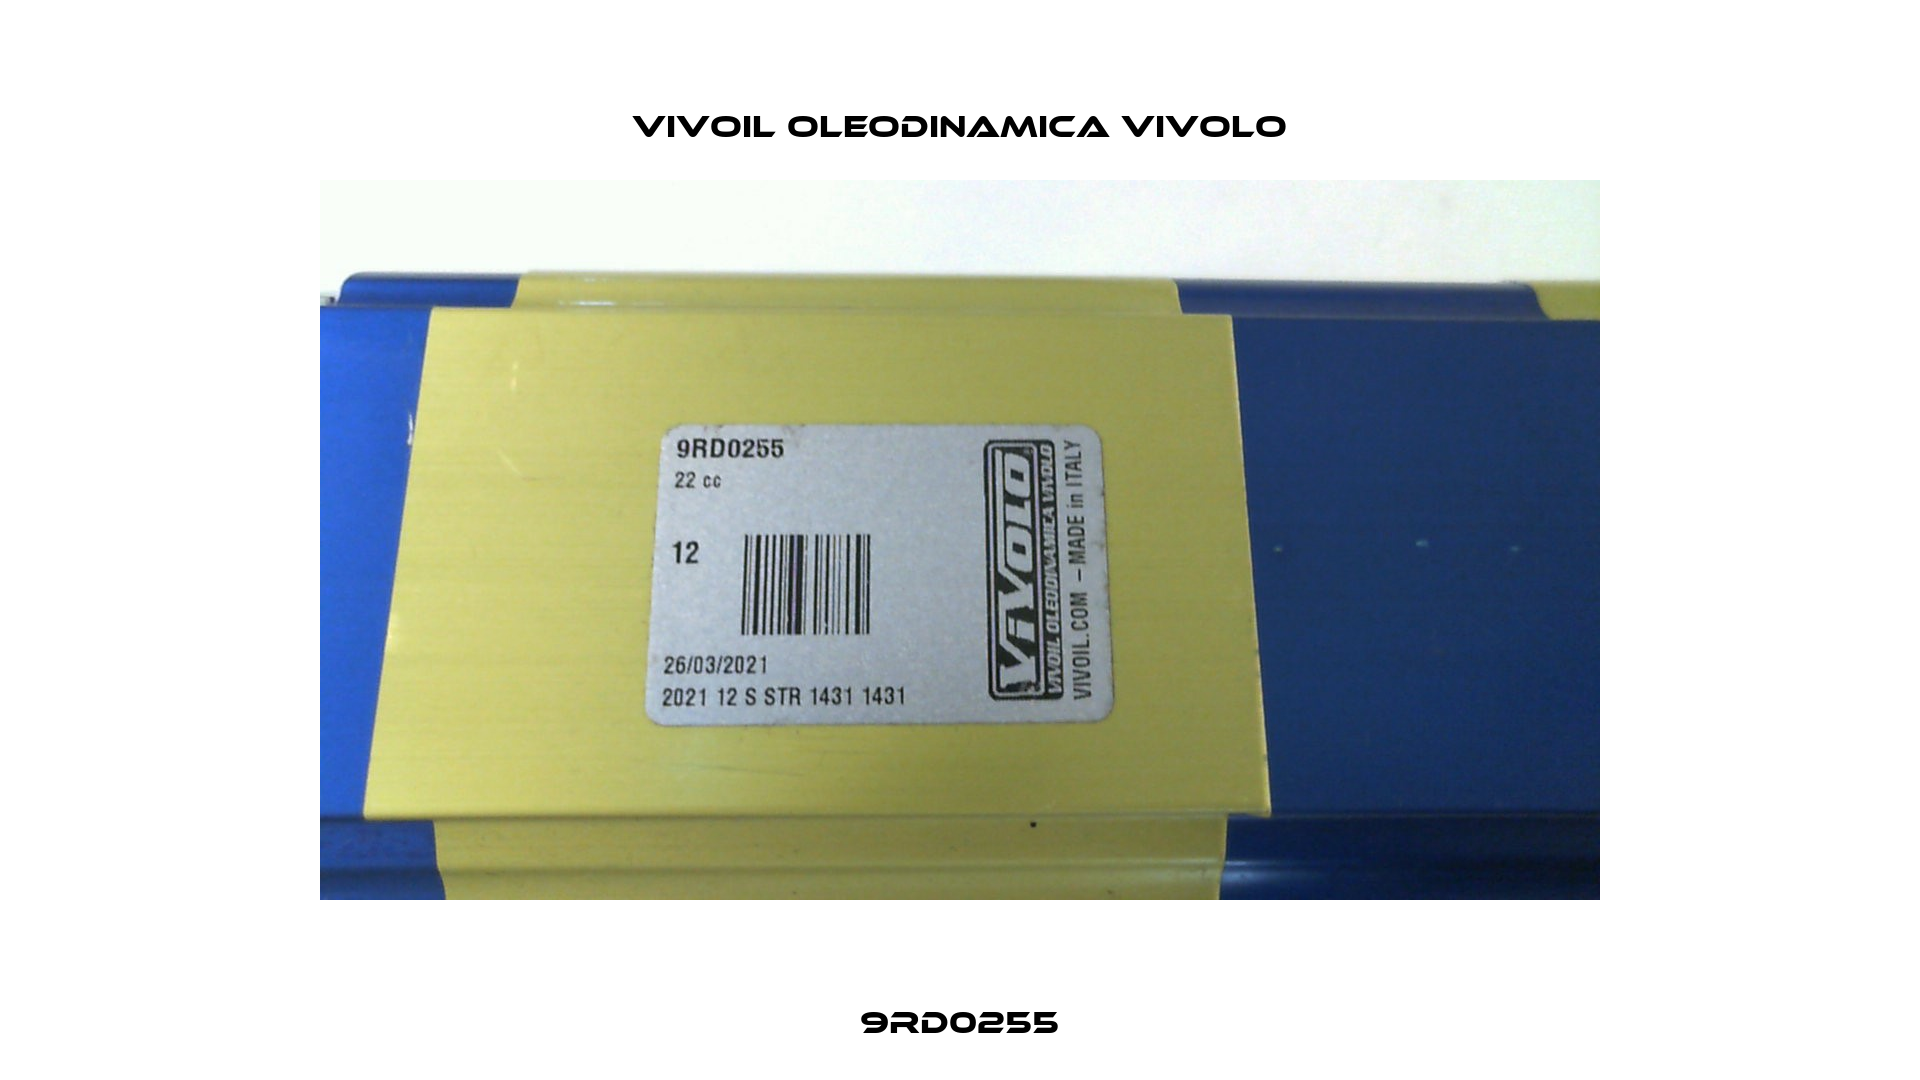 9RD0255 Vivoil Oleodinamica Vivolo